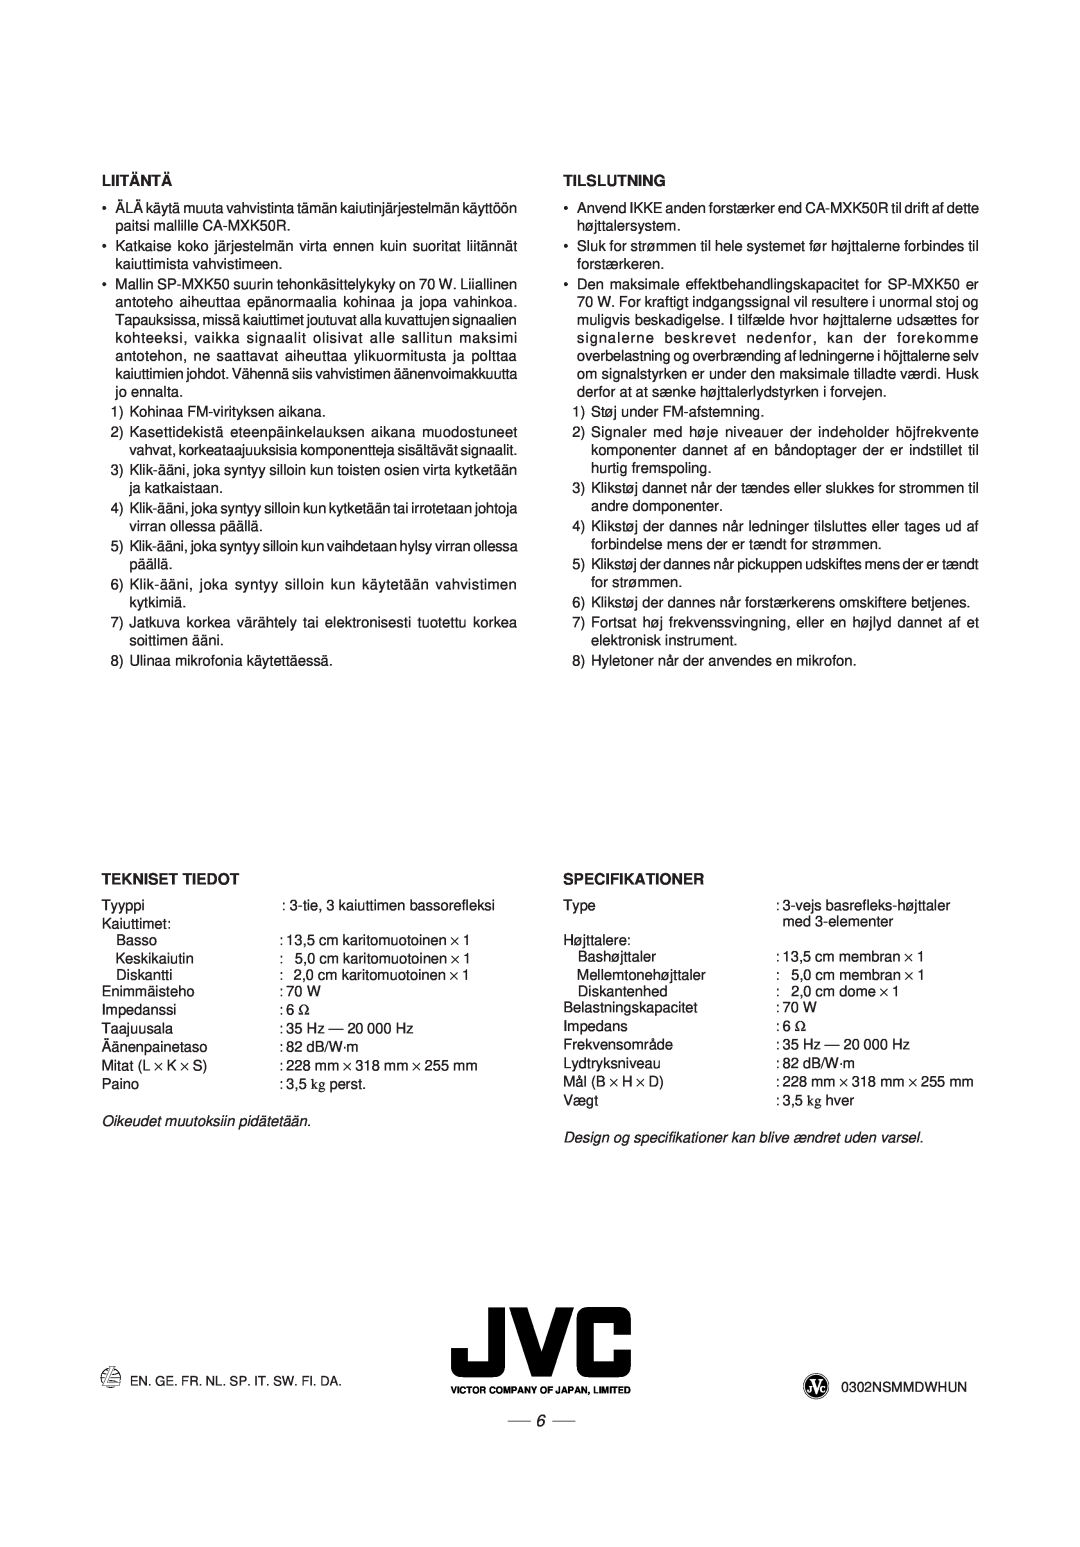 JVC CA-MXK50R manual Liitäntä, Tilslutning, Tekniset Tiedot, Specifikationer, Oikeudet muutoksiin pidätetään 